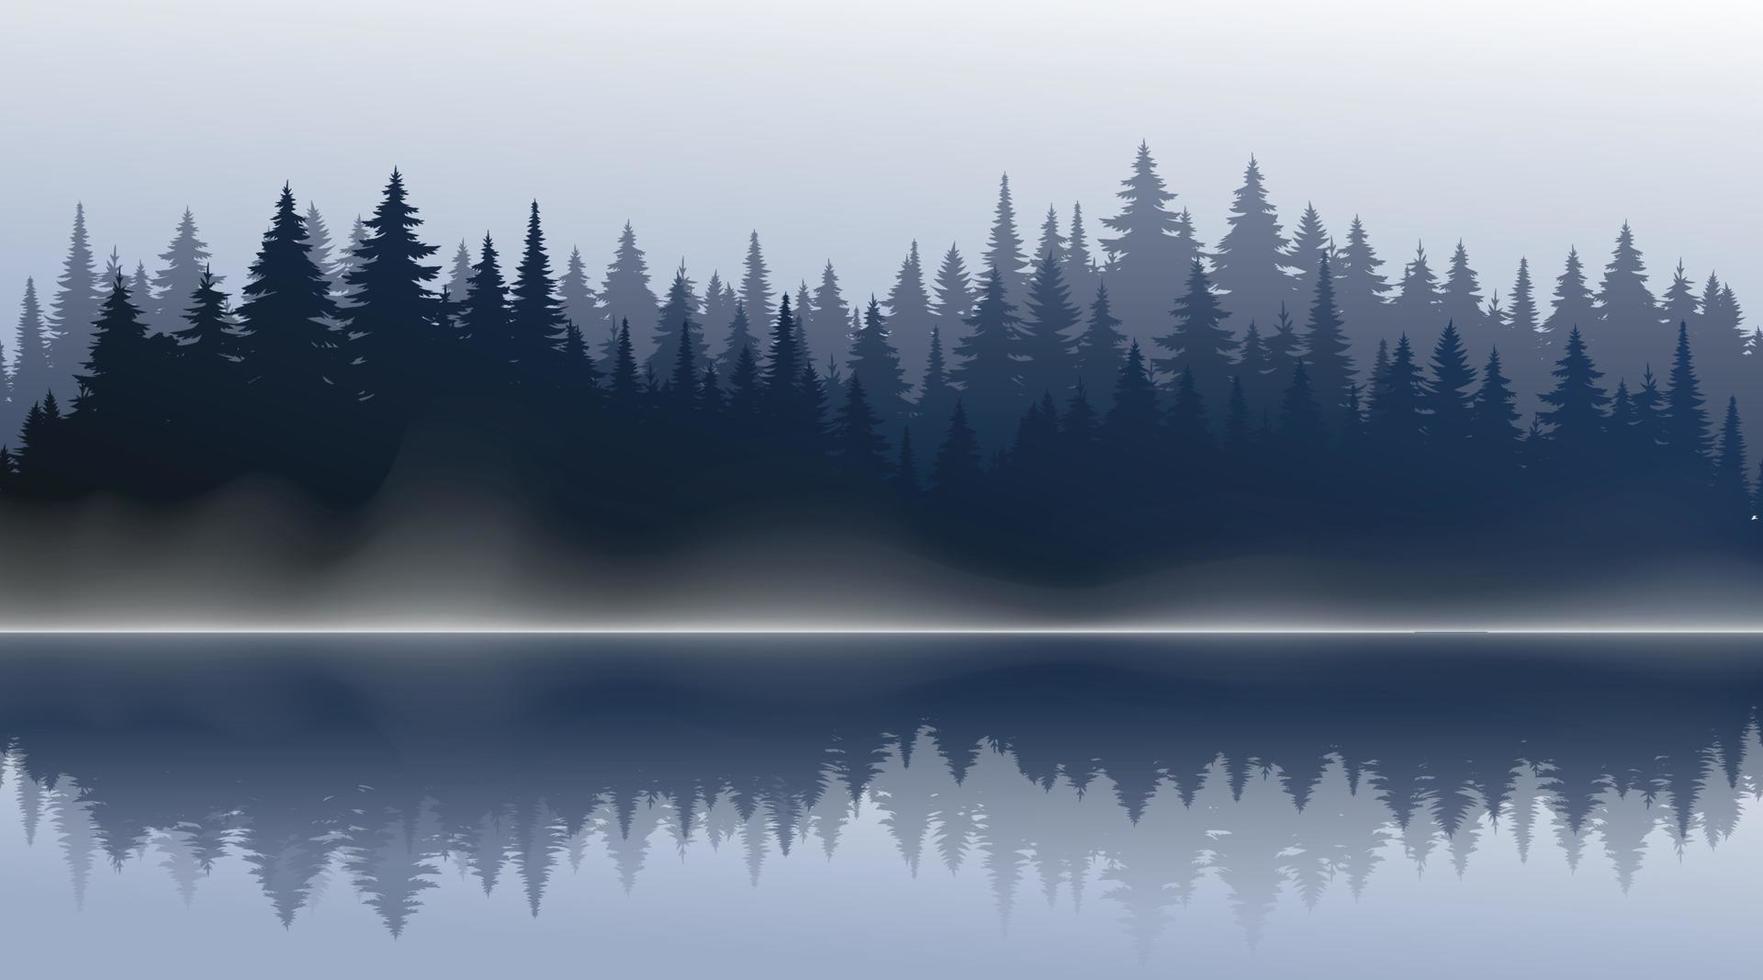 Vektor Berge Wald Hintergrundtextur, Silhouette von Nadelwald, Vektor. Saison Bäume am See, Spiegelung im Wasser Fichte, Tanne. horizontale Landschaft.